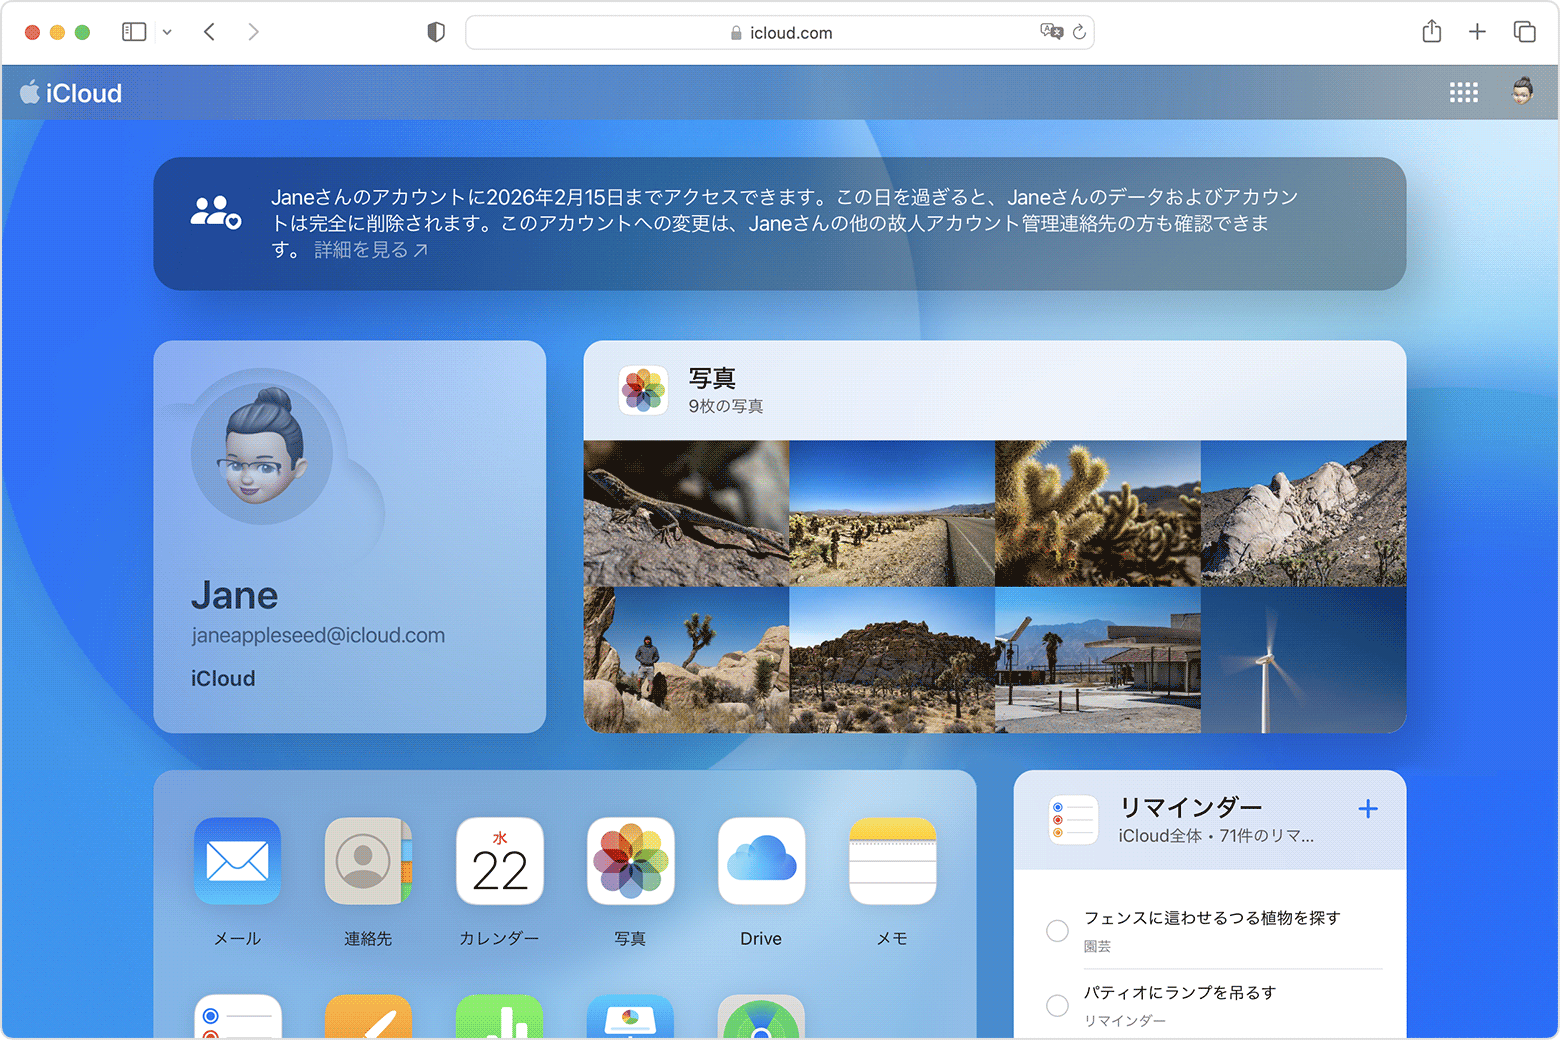 Mac の画面に、「故人アカウント管理連絡先」としてアクセスする方法が示されています 